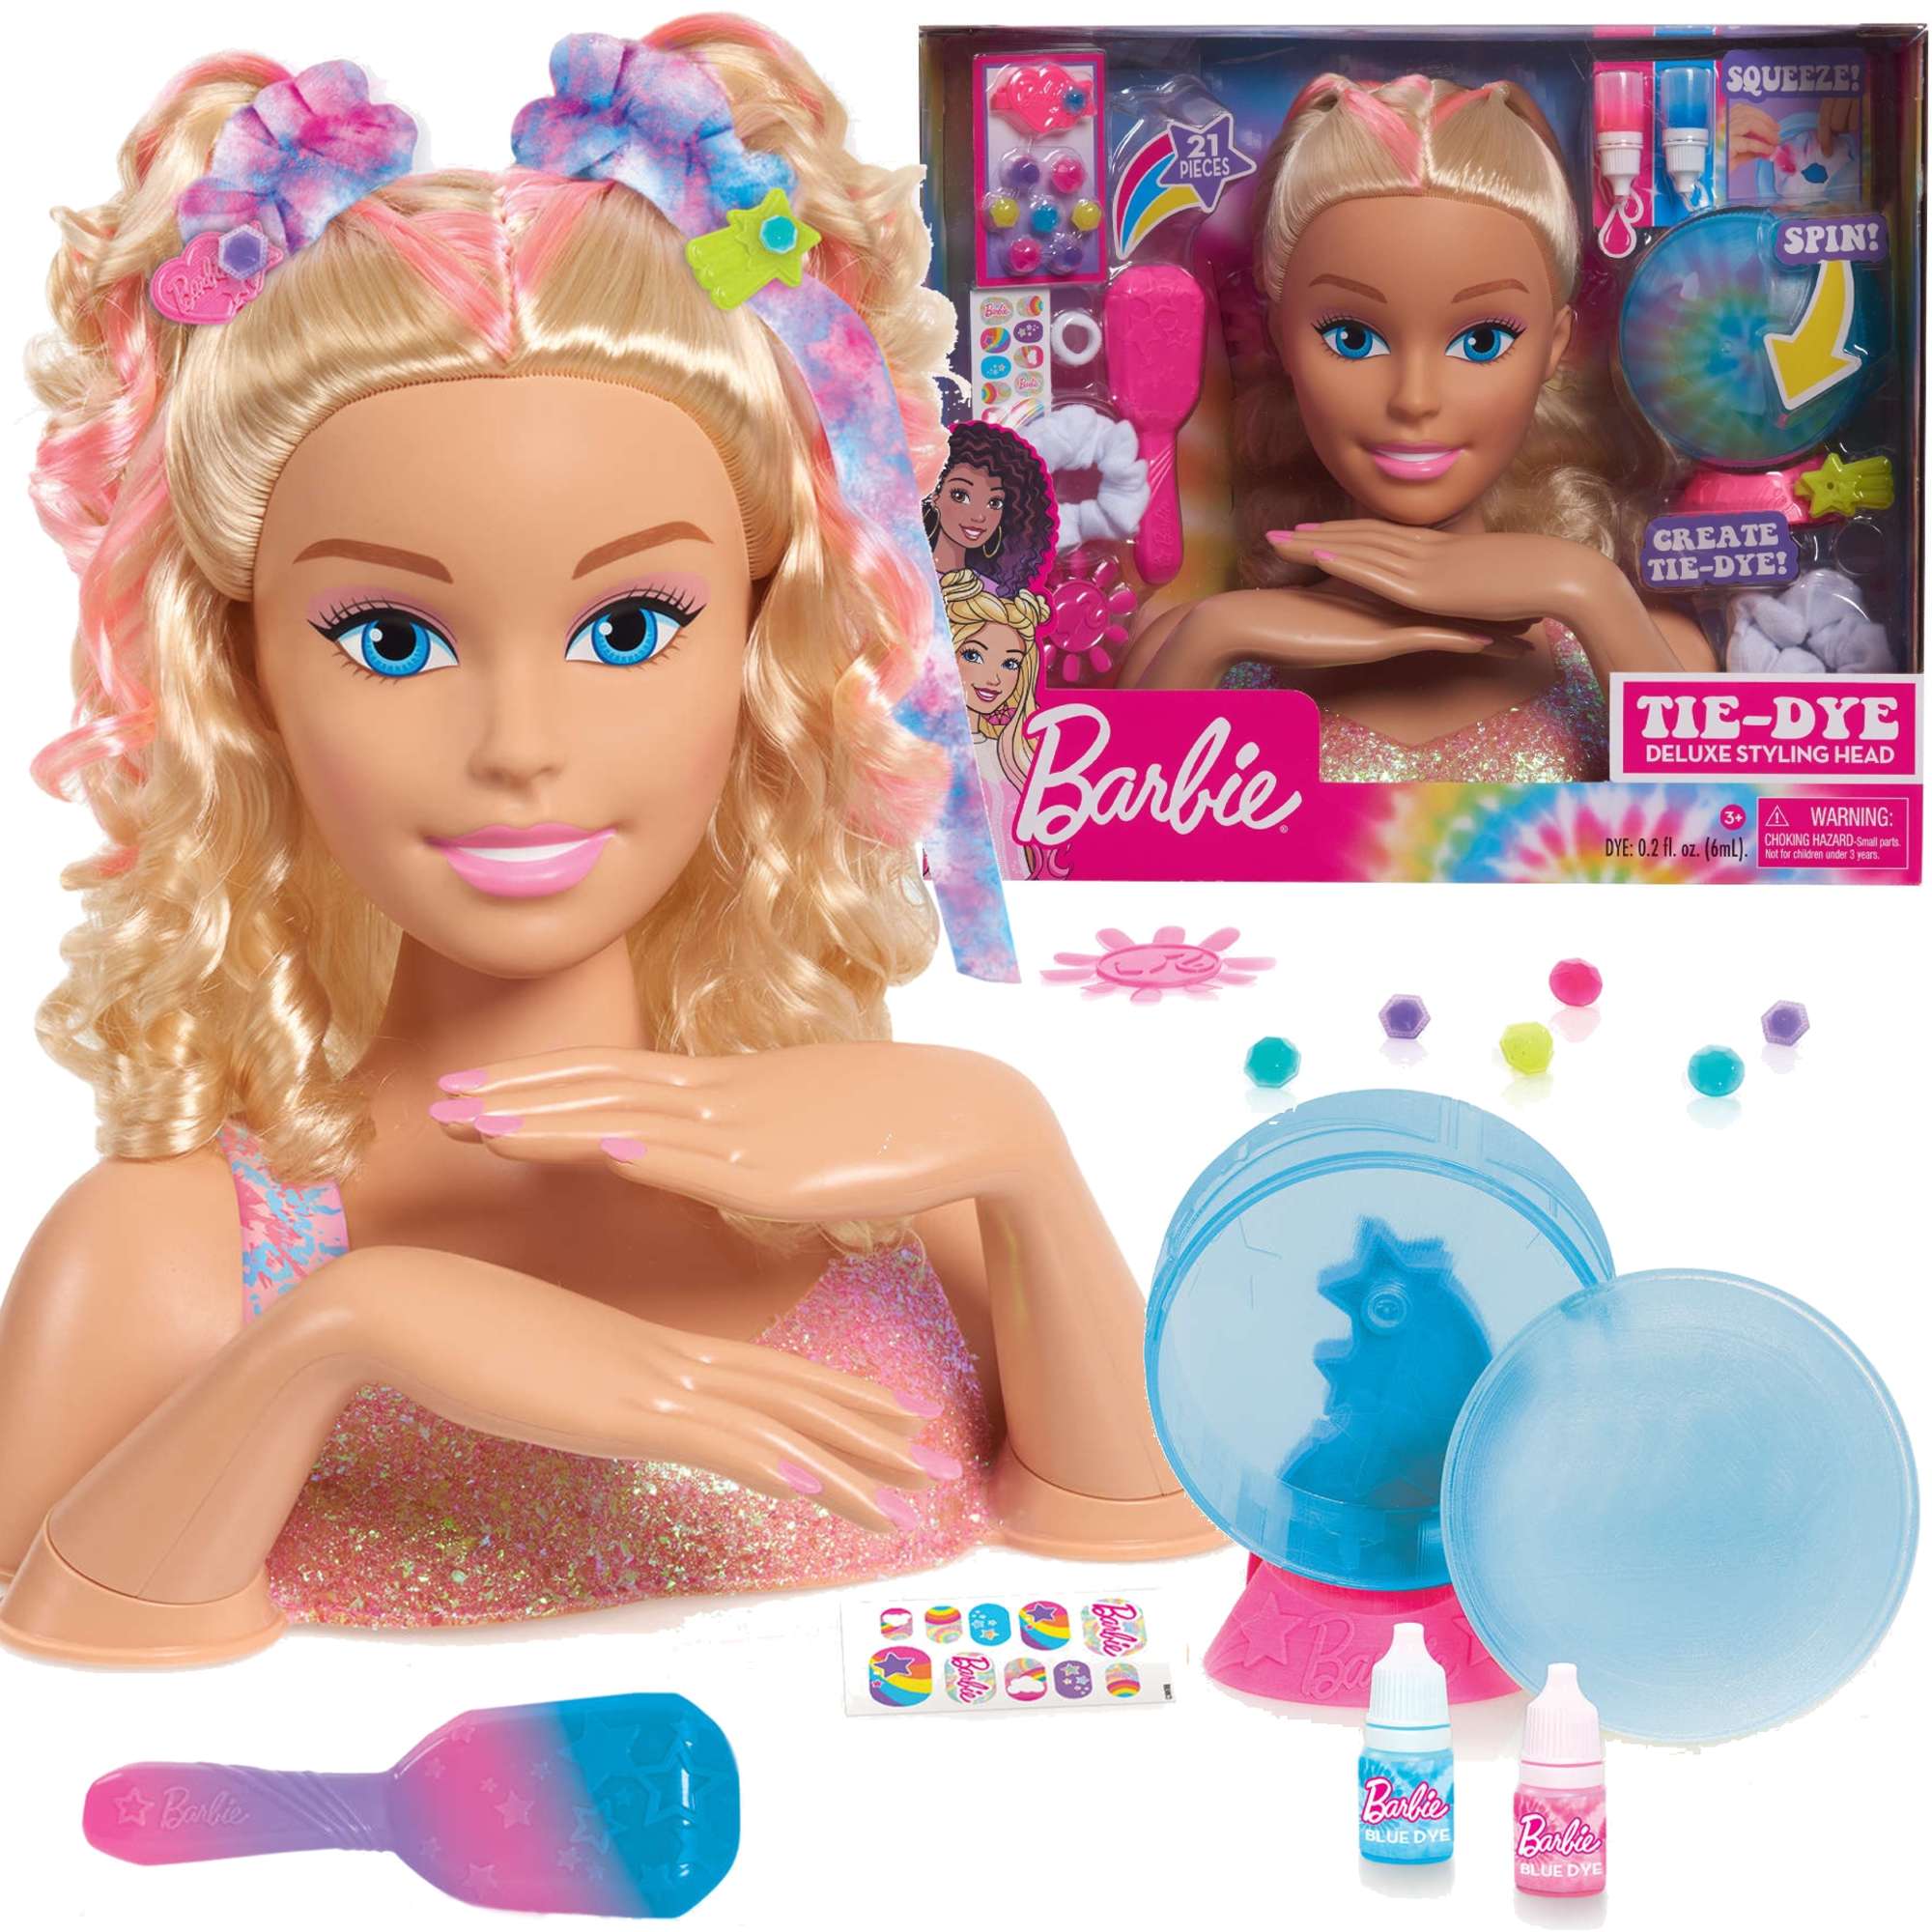 Lalka Gowa do stylizacji czesania wosw Barbie Tie-Dye Fryzjer Manicure paznokcie+ akcesoria